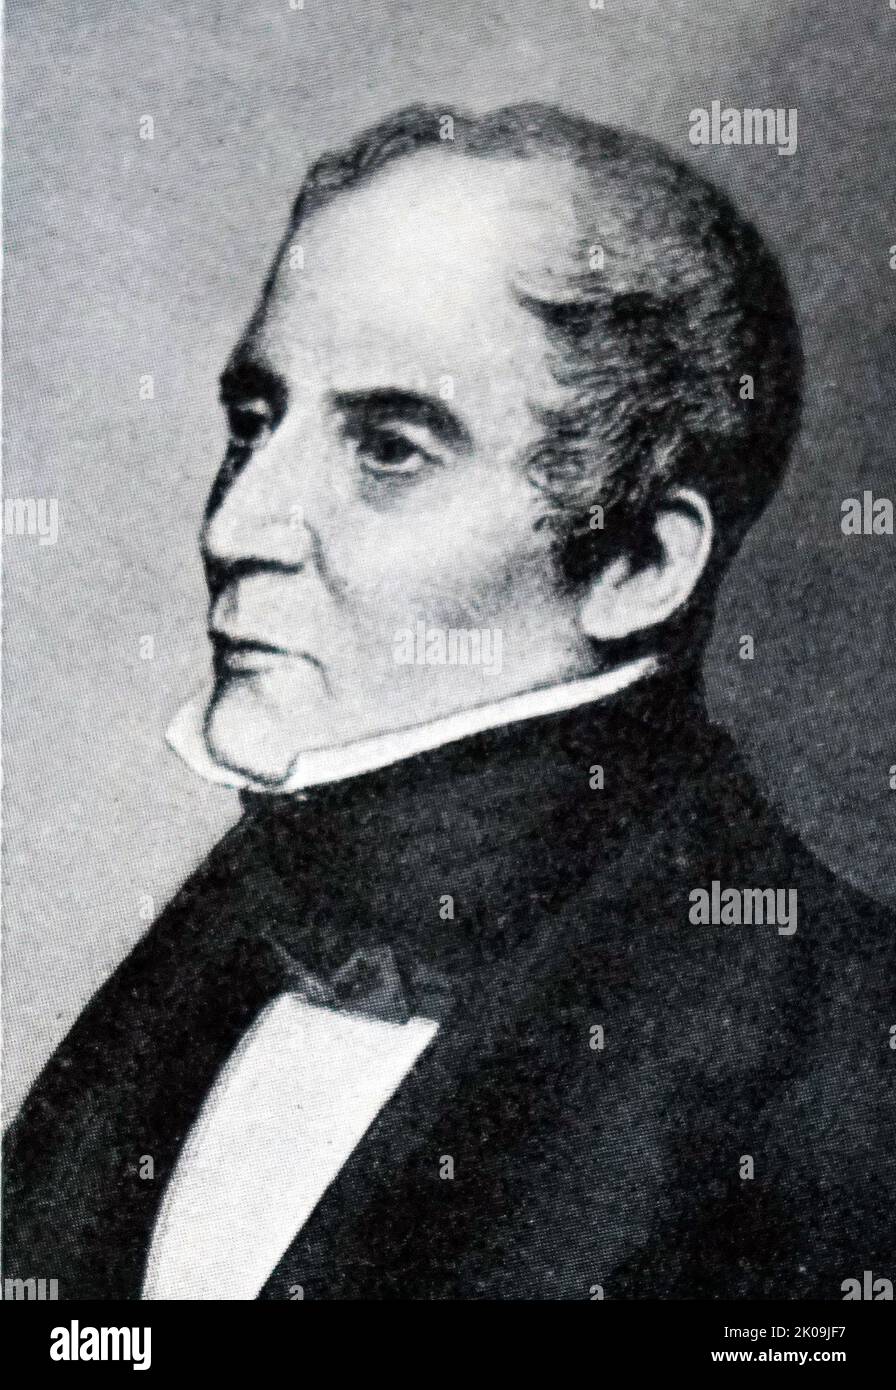 Sir George Arthur, (1784 - 1854) von 1814 bis 1822 Vizegouverneur des britischen Honduras, von 1823 bis 1837 Van Diemen's Land (das heutige Tasmanien). Die bösartige Kampagne gegen die Tasmanier der Aborigines, bekannt als der Schwarze Krieg, ereignete sich während dieser Amtszeit. Später diente er von 1838 bis 1841 als Vizegouverneur von Oberkanada und von 1842 bis 1846 als Gouverneur von Bombay. Stockfoto